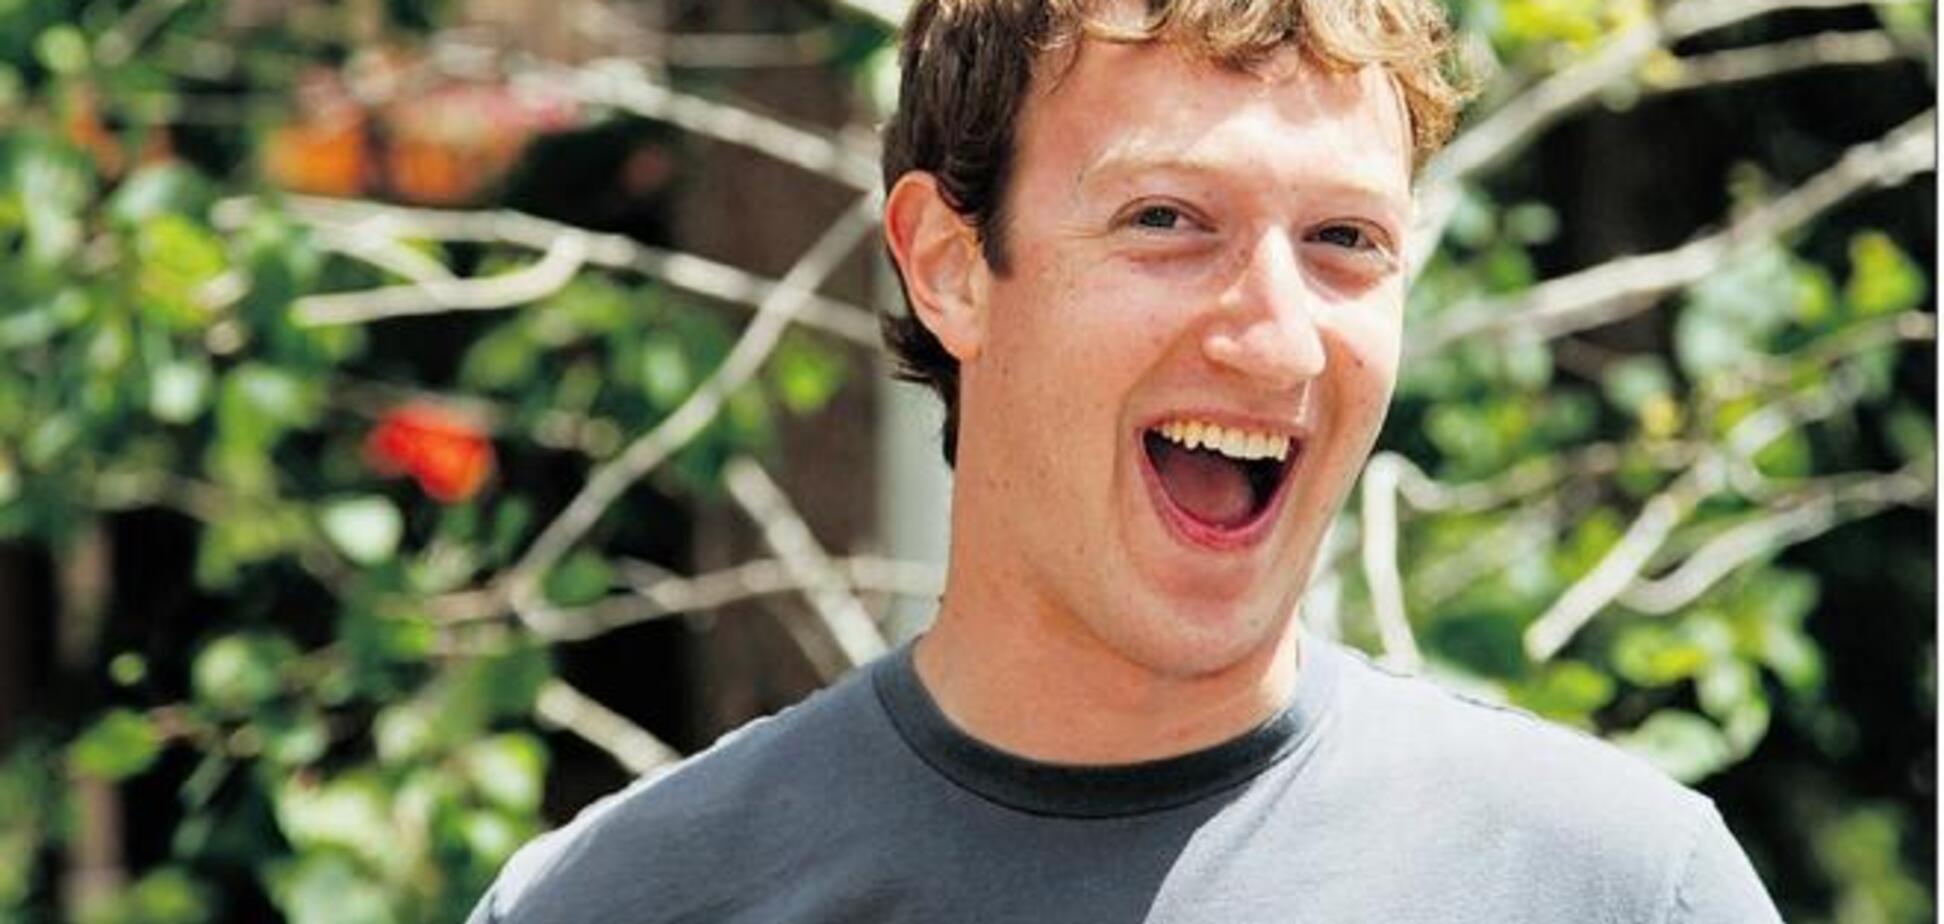 Цукербергу стукнуло 30! 8 фактов о создателе Фейсбука, которые вас удивят